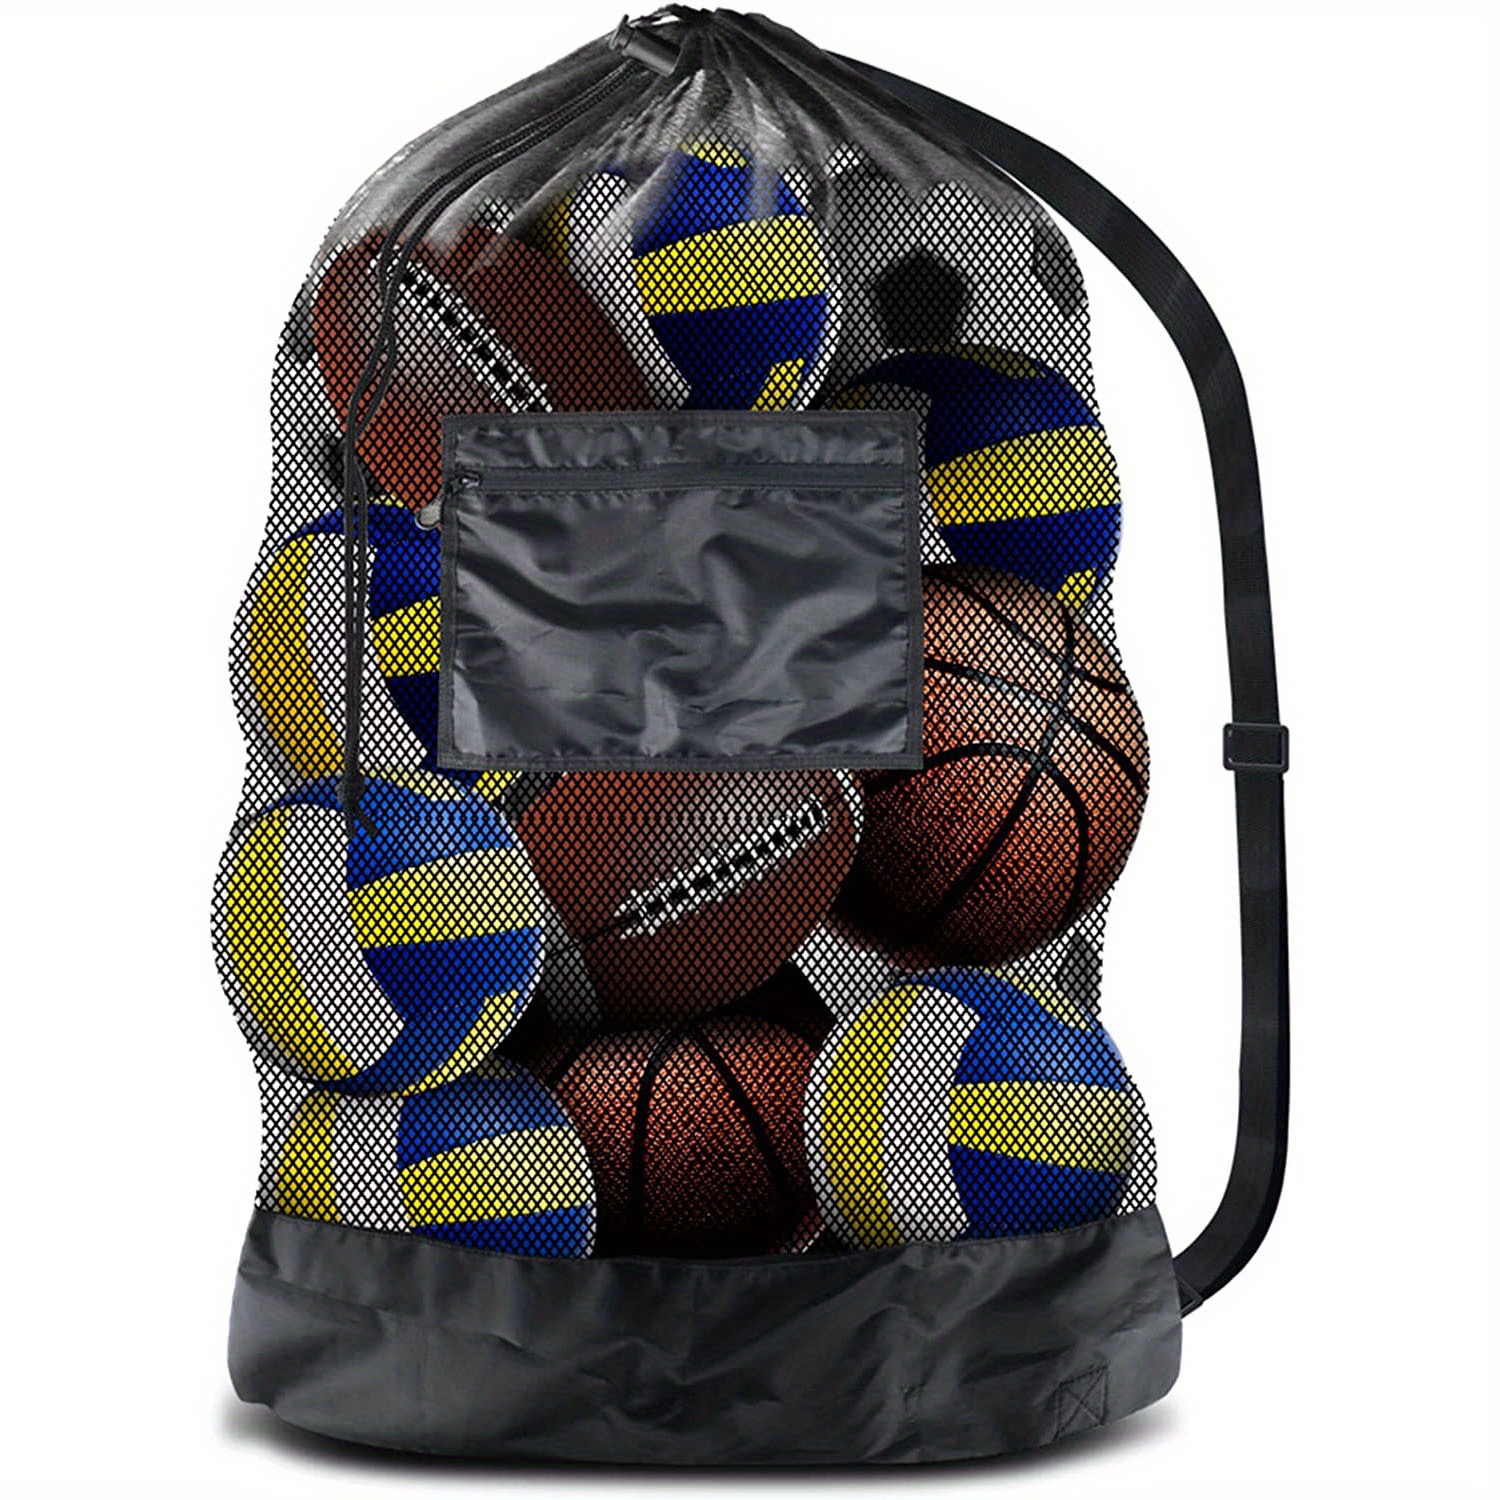 NBA® Collapsible Basketball Duffel Bag | Basketball duffel bag, Brooklyn  nets basketball, Bags